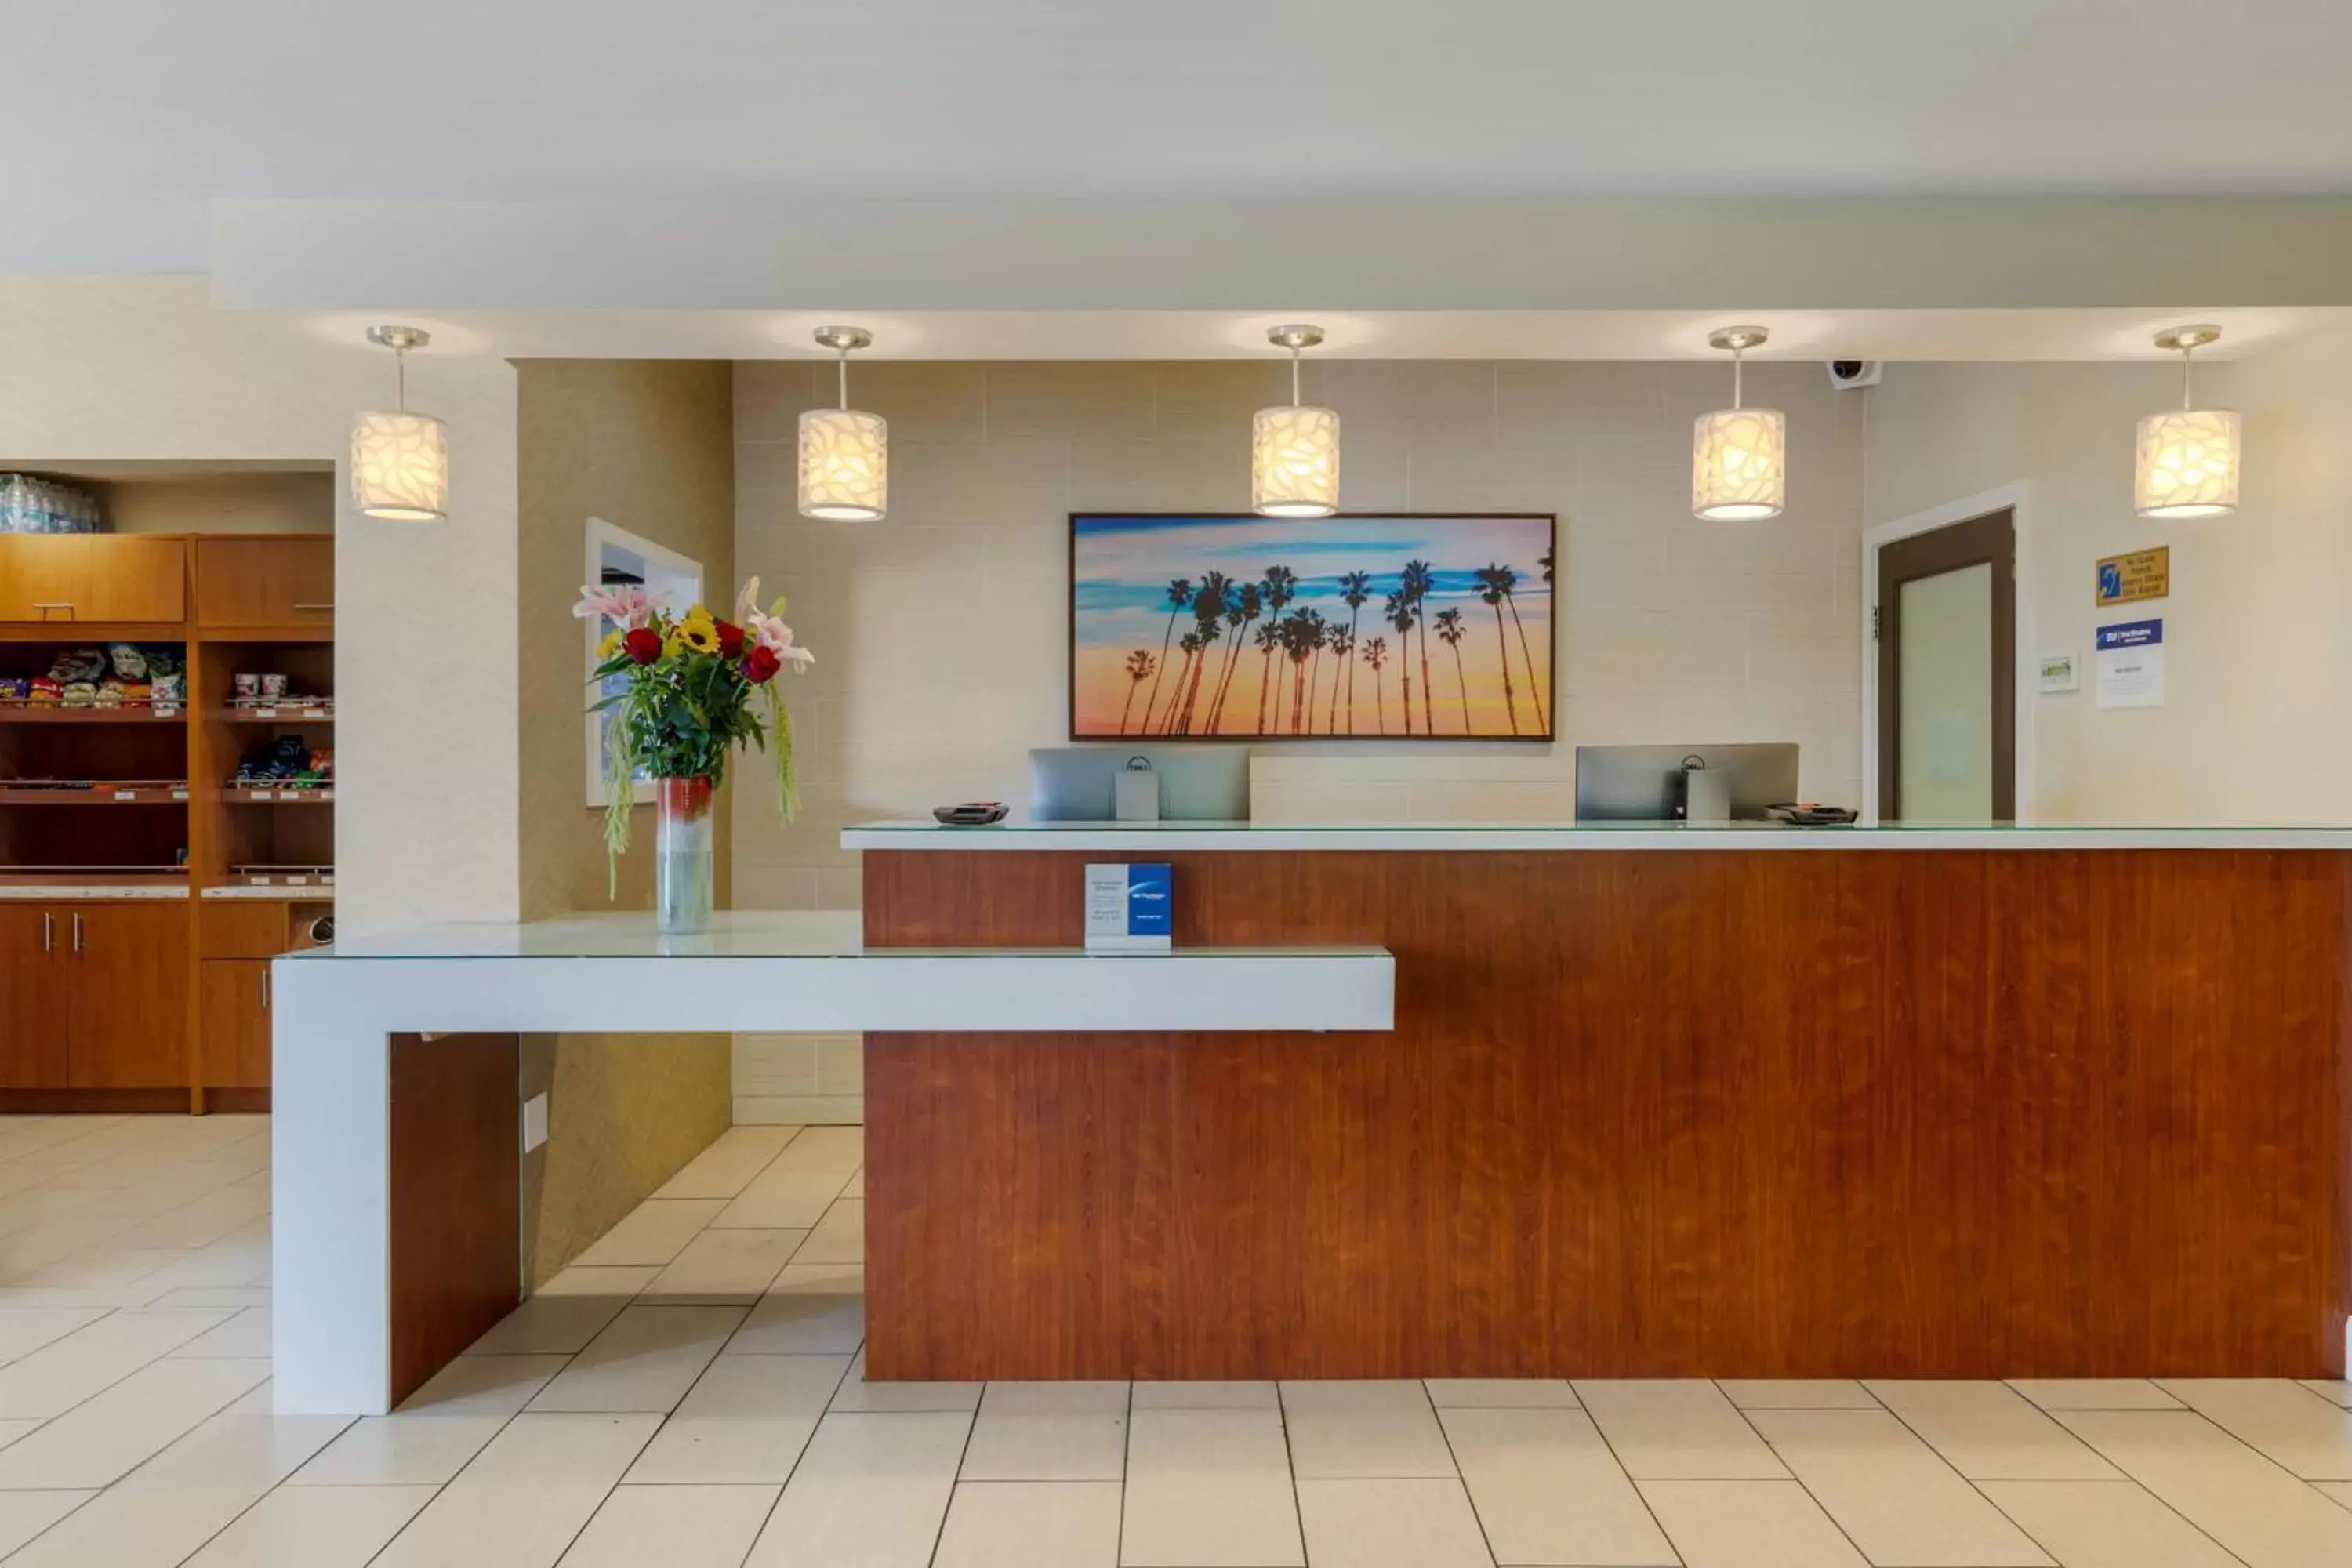 Lobby or reception, Lobby/Reception in Best Western Plus South Coast Inn